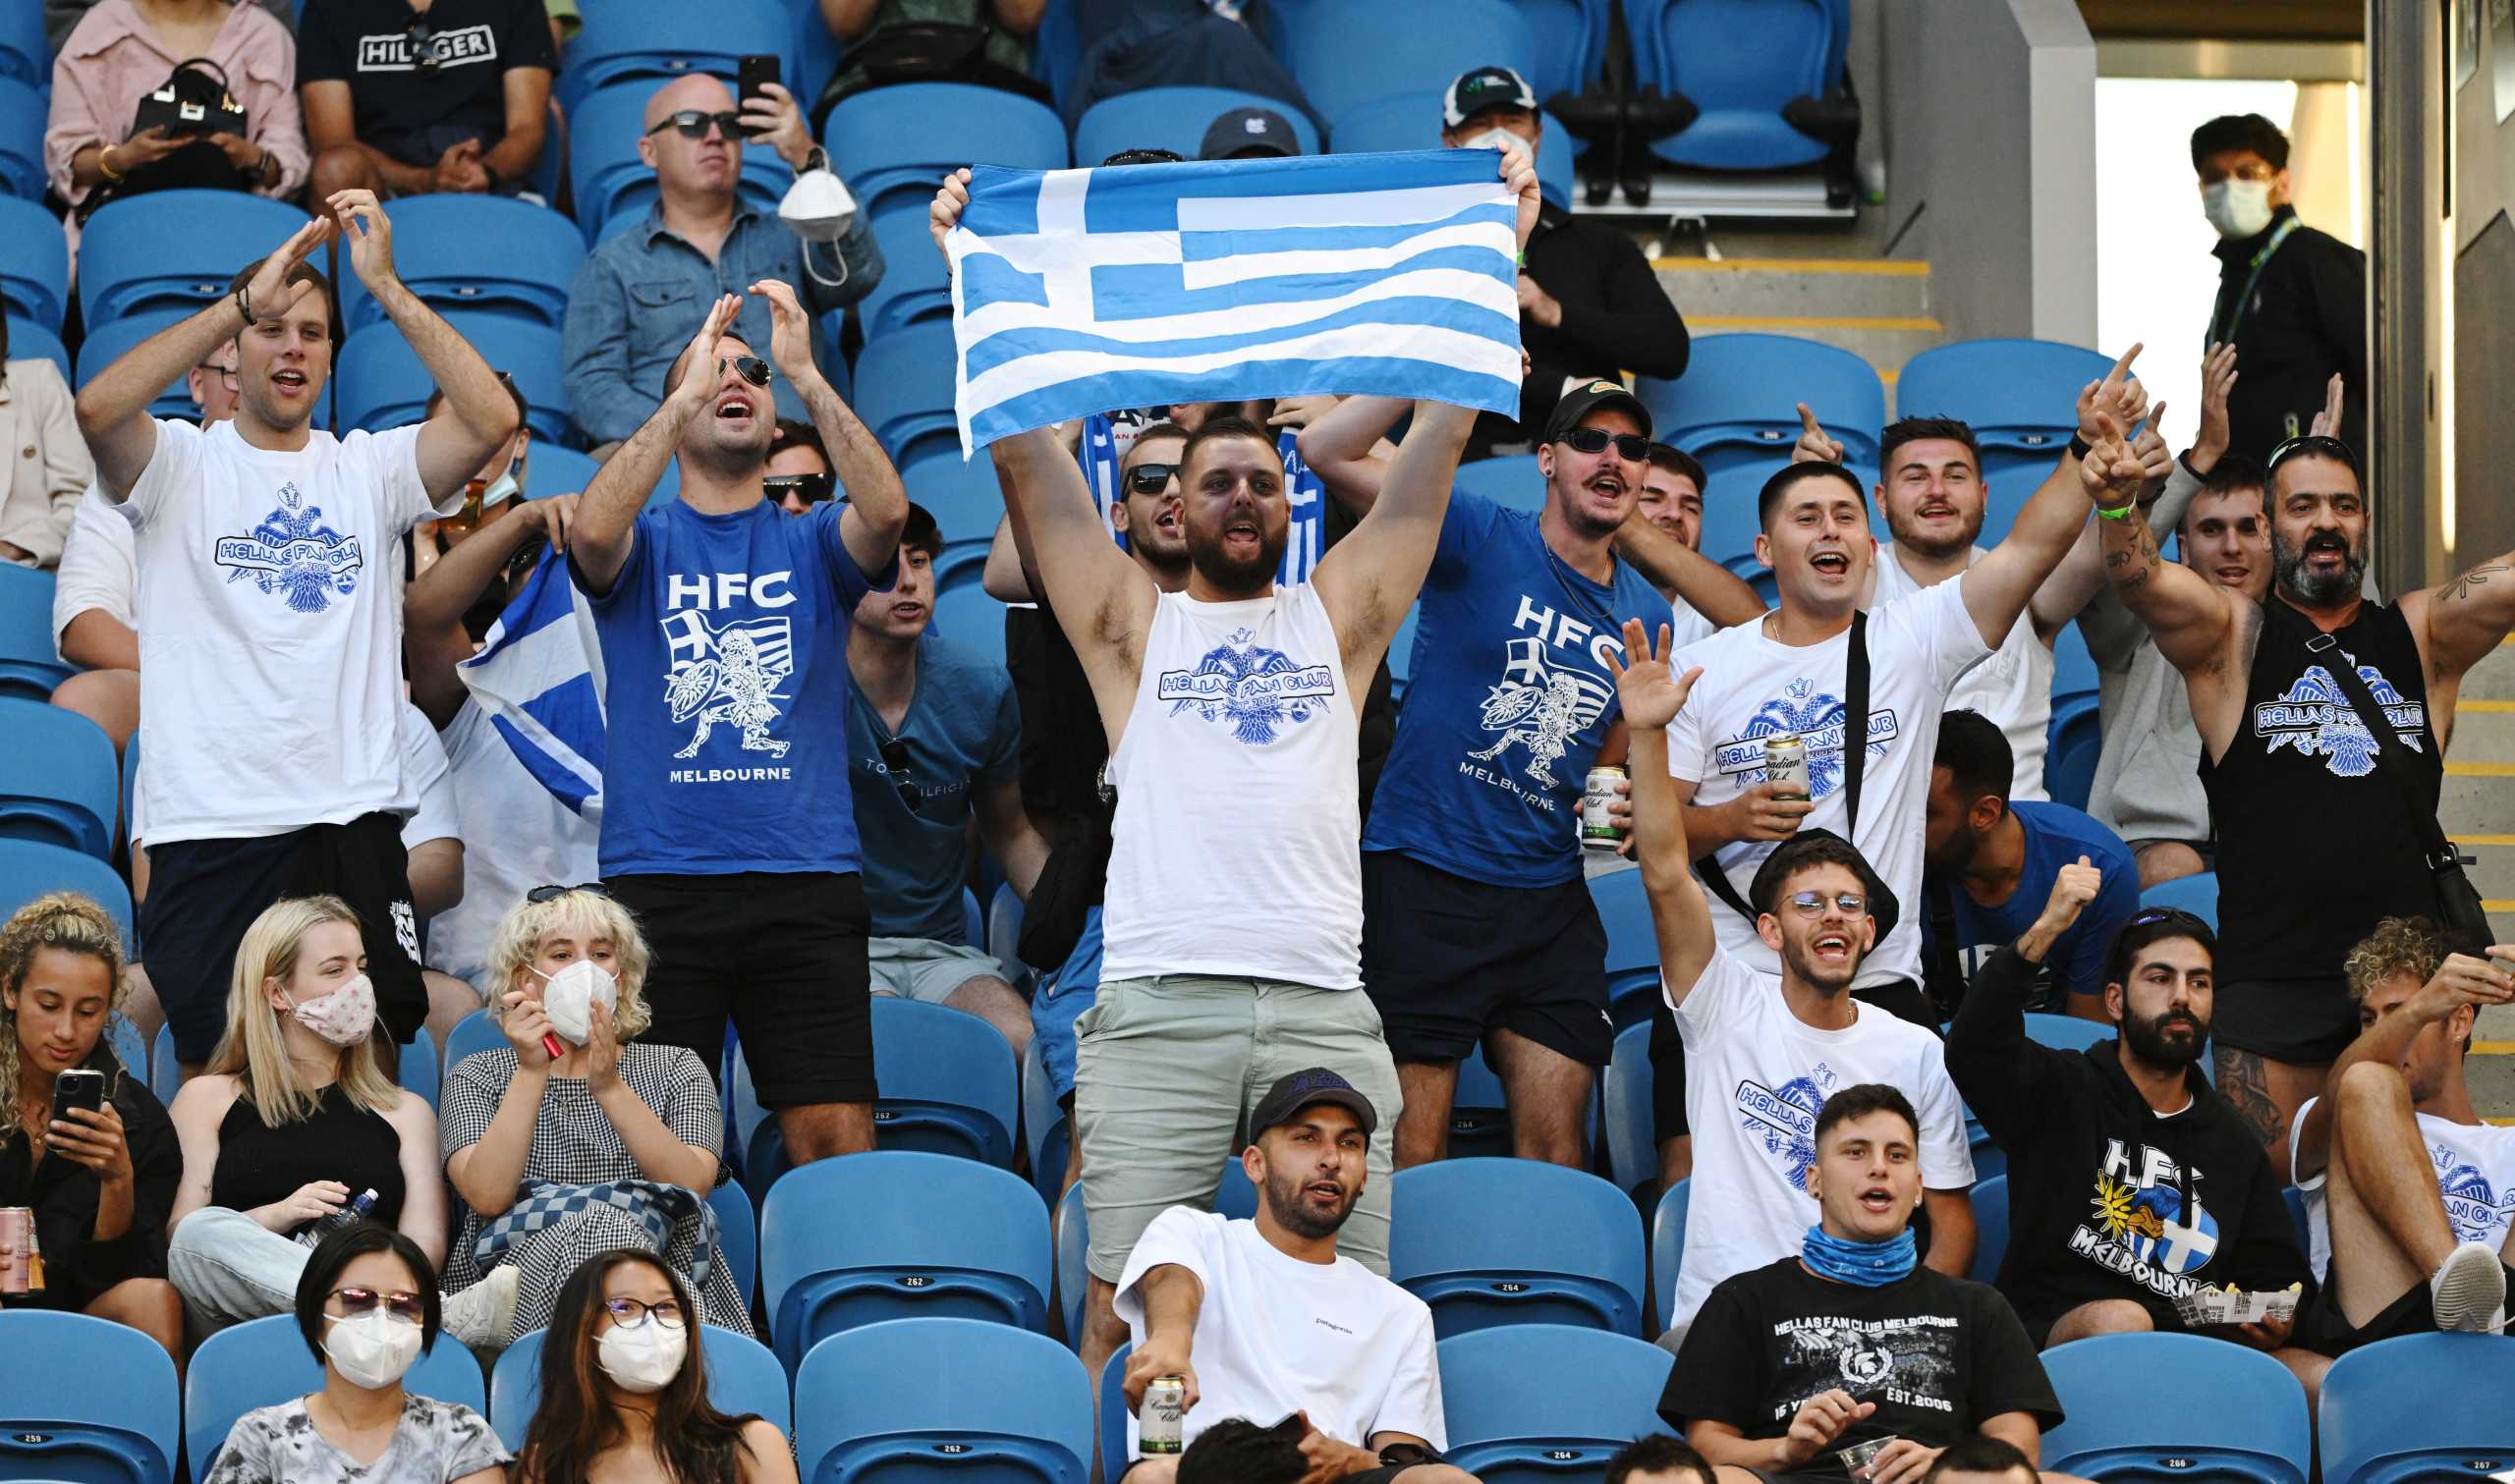 Μαρία Σάκκαρη: Οι Έλληνες στις κερκίδες τραγούδησαν το My Number One της Έλενας Παπαρίζου